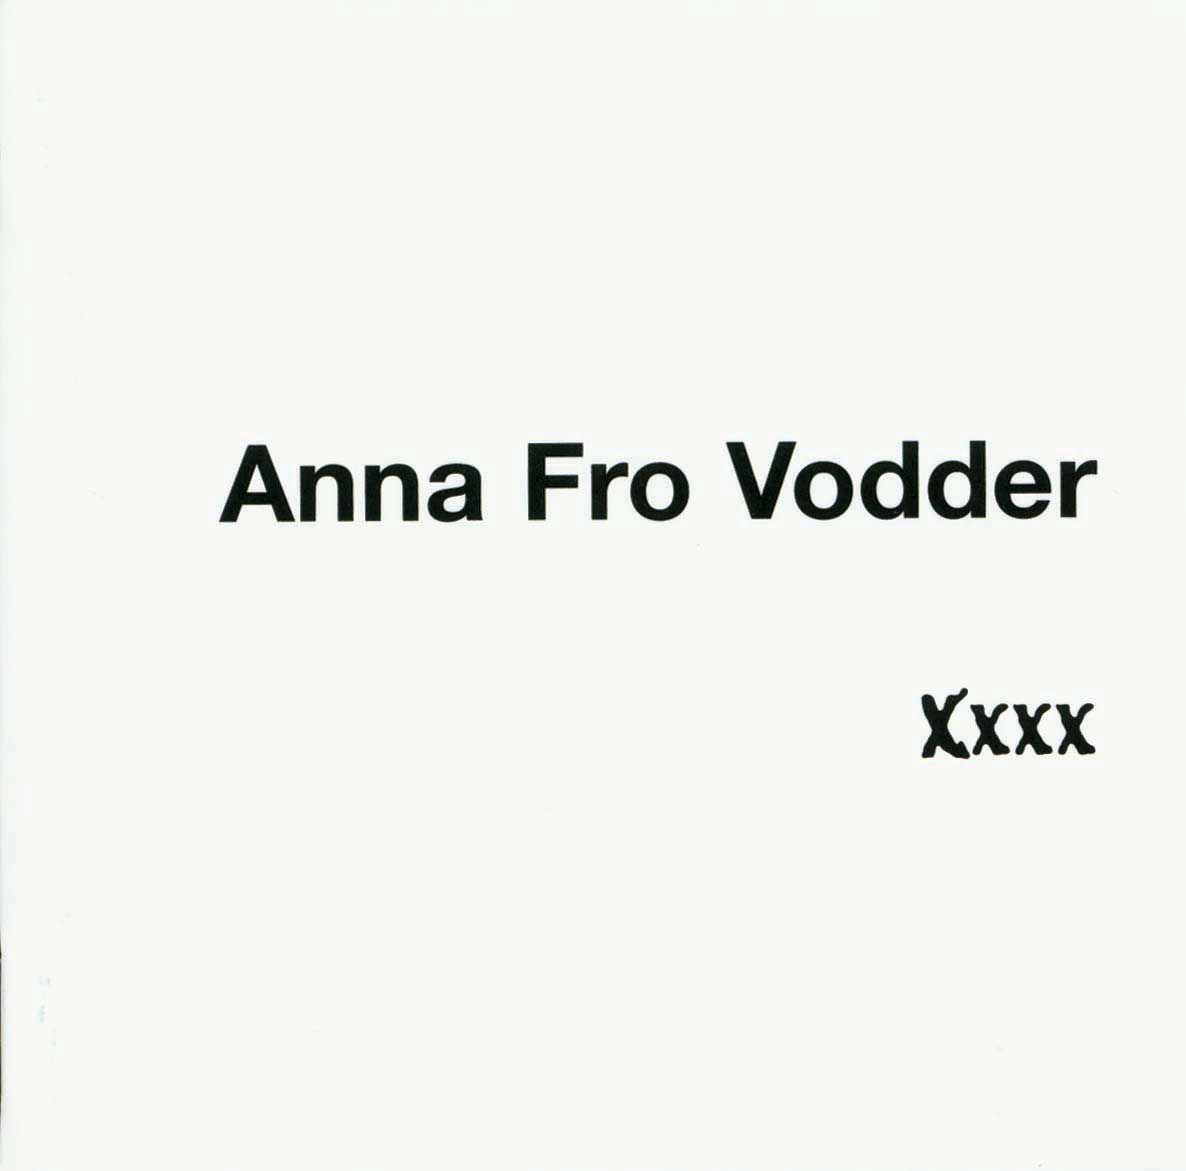 Anna Fro Vodder, Xxxx